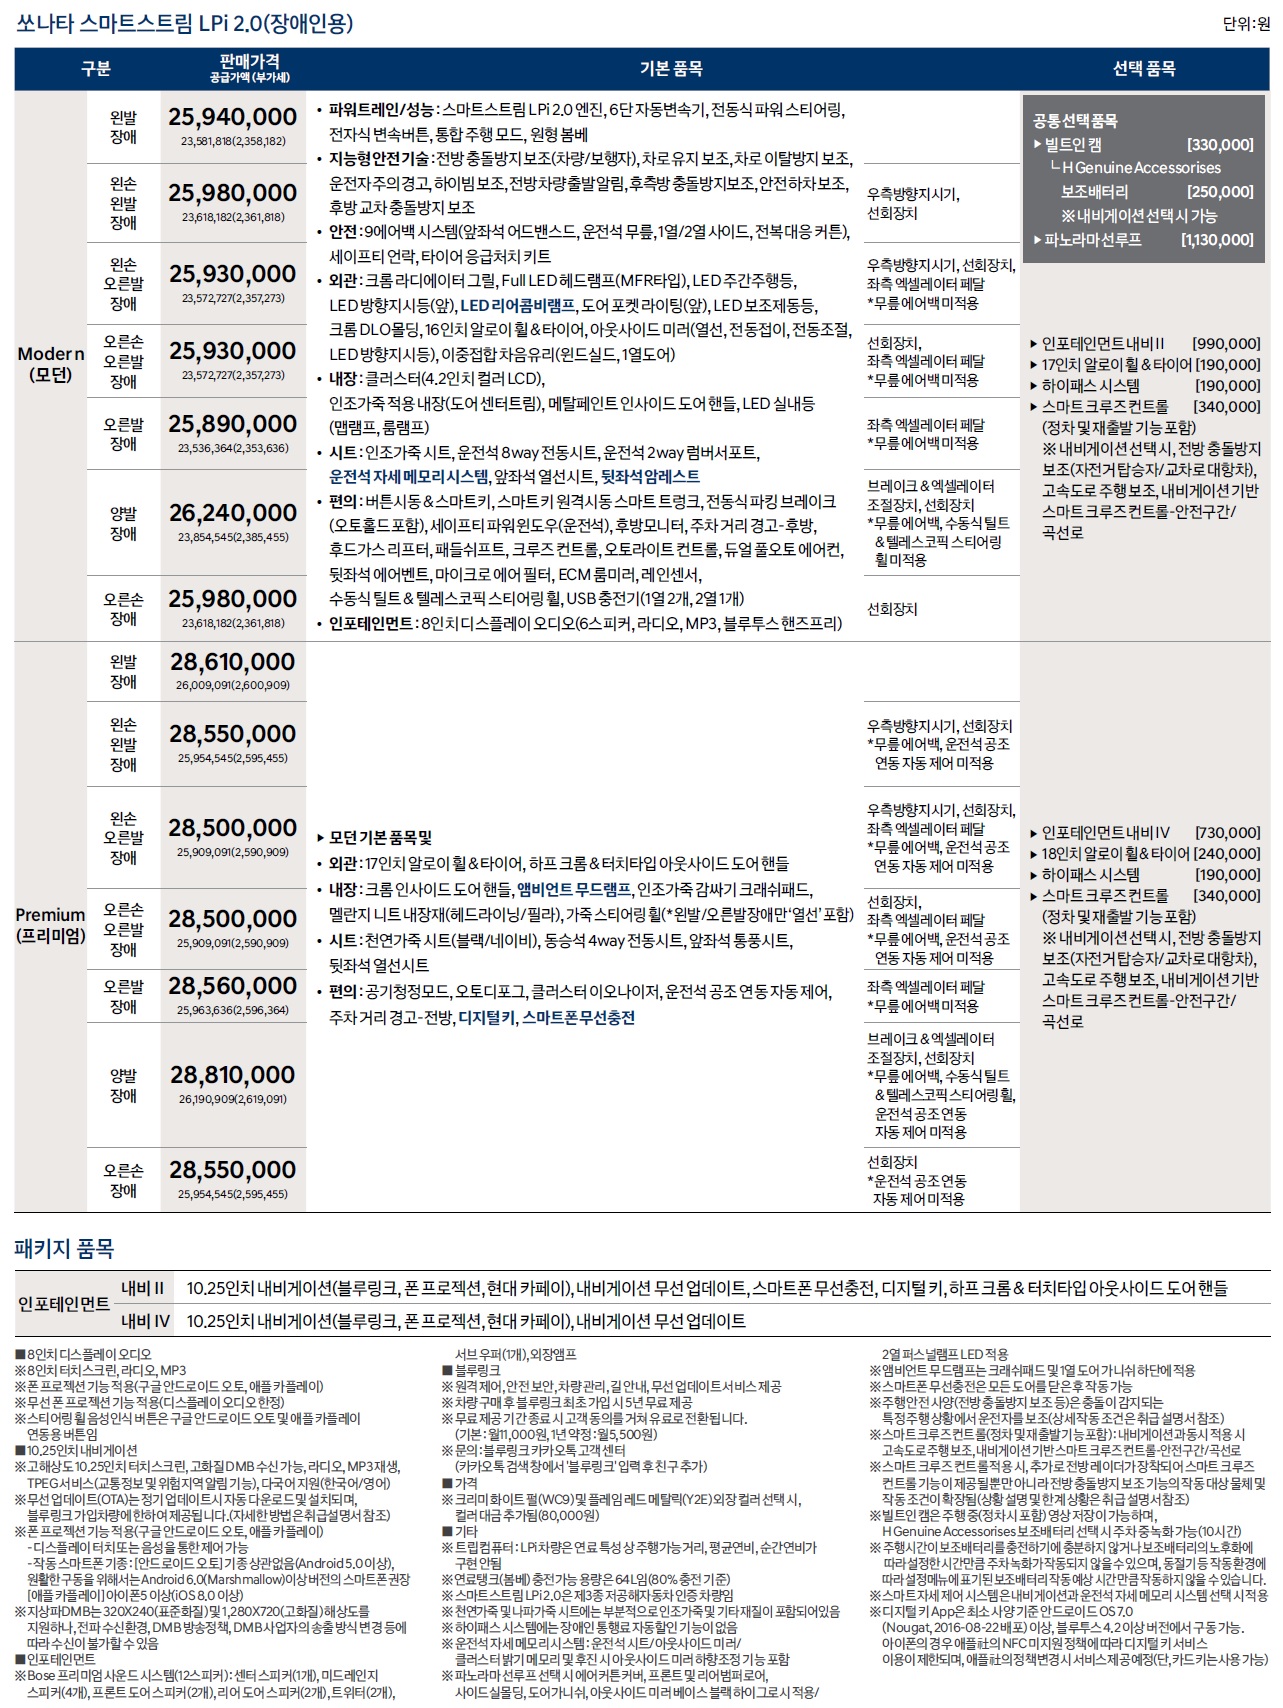 쏘나타 가격표 - 2022년 07월 (2023년형) -5.jpg